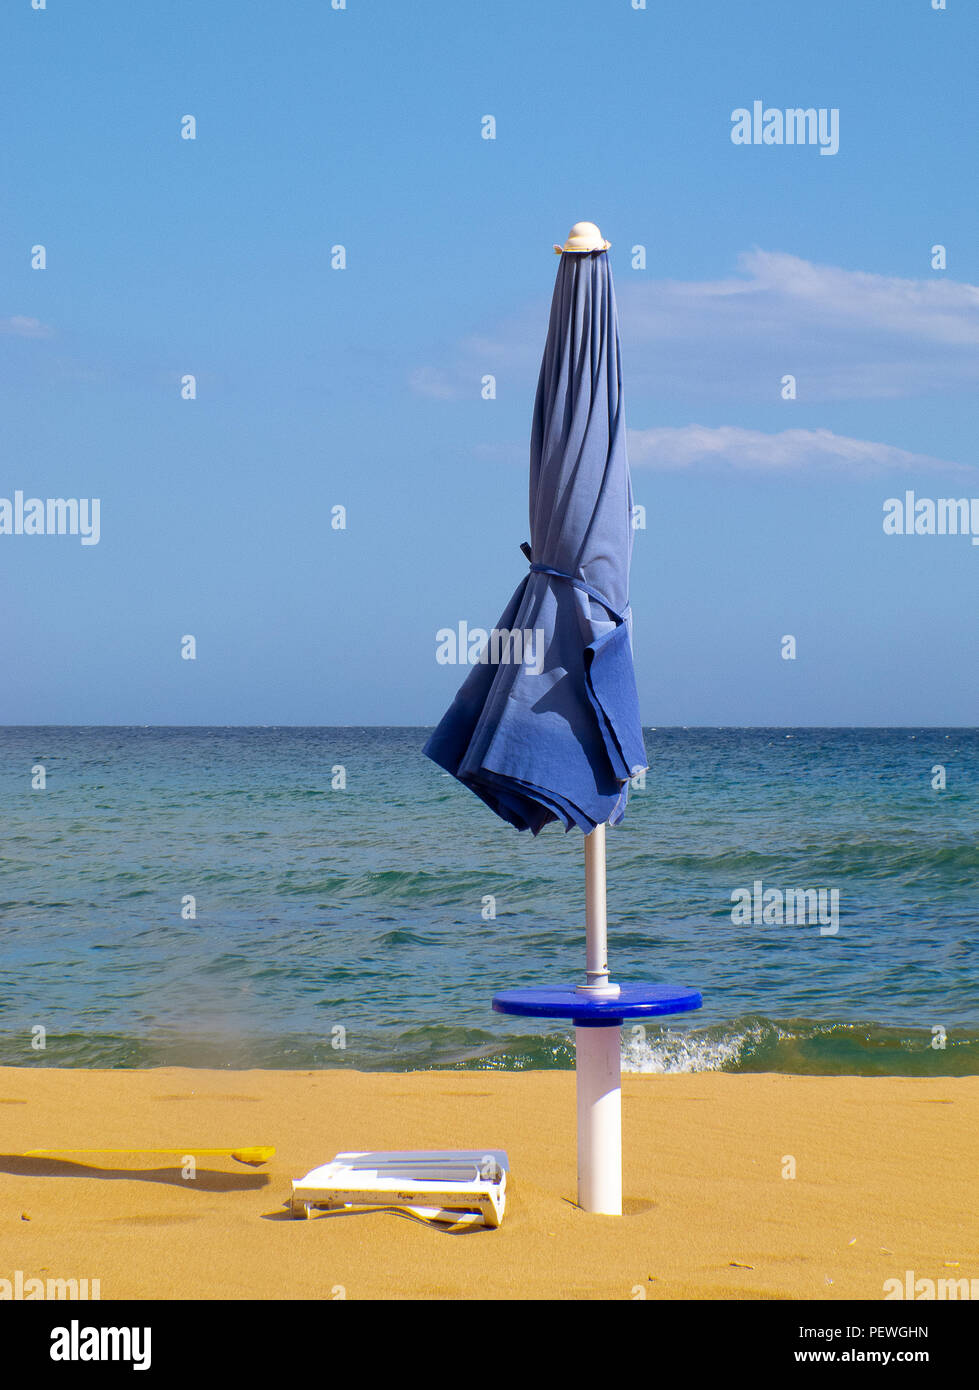 Calabria (Italia): chiuso ombrellone con cielo e mare blu in background  Foto stock - Alamy